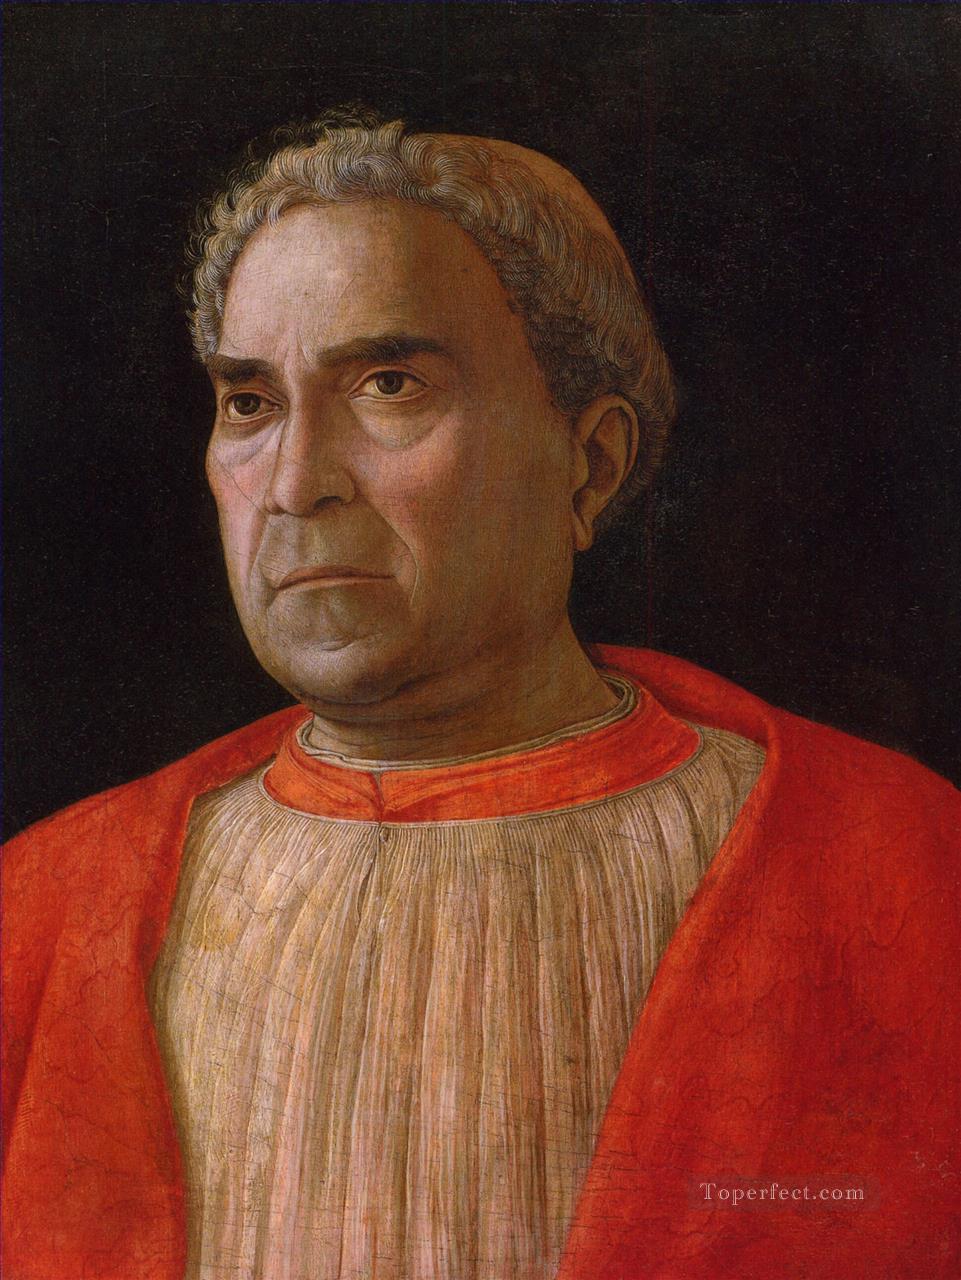 ルドヴィコ・トレビサーノ枢機卿 ルネサンスの画家 アンドレア・マンテーニャ油絵